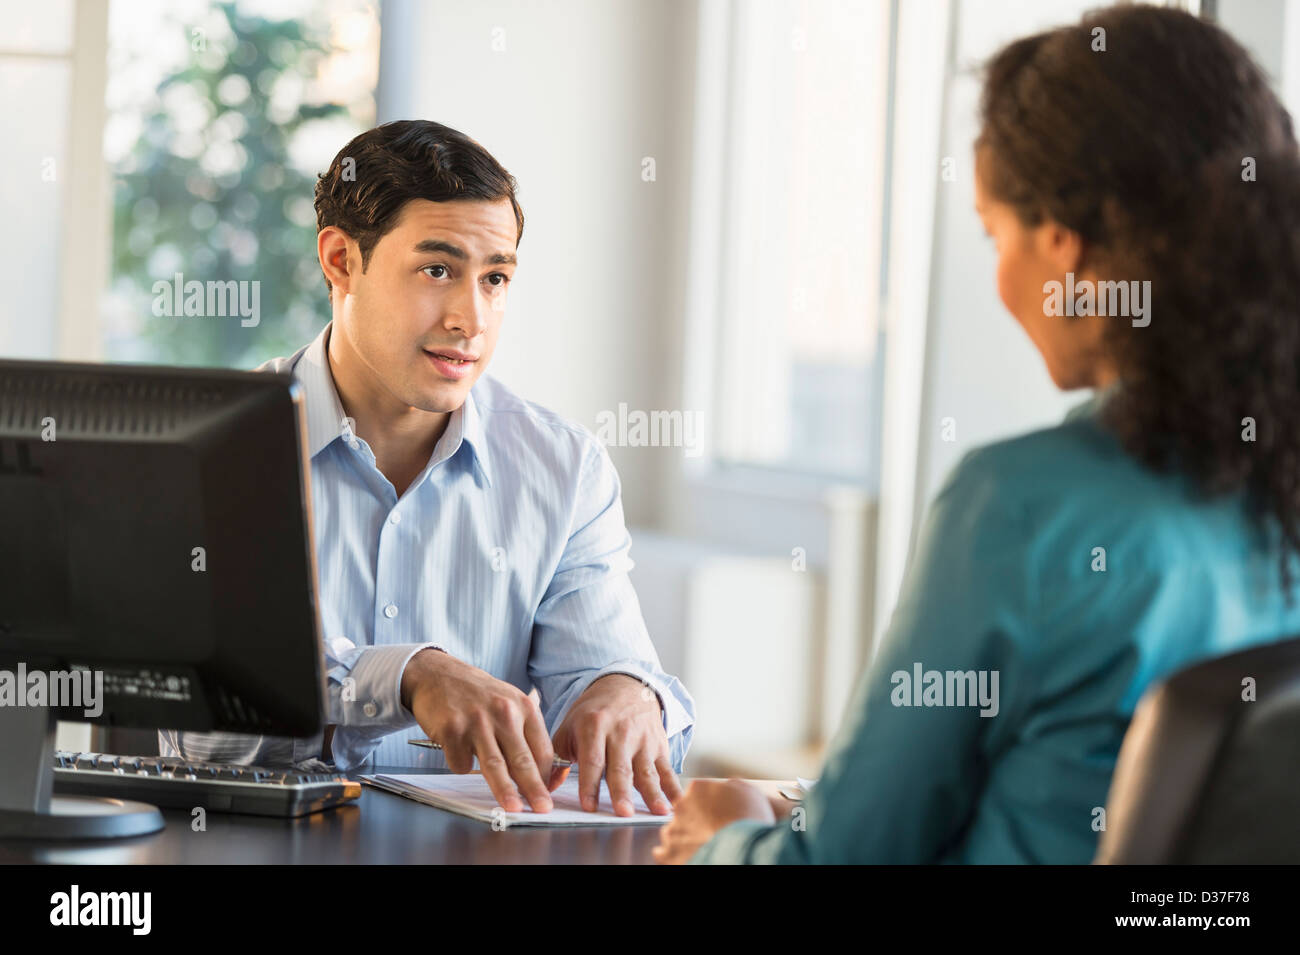 USA, New Jersey, Jersey City, Mann und Frau im Gespräch am Schalter während Job interview Stockfoto